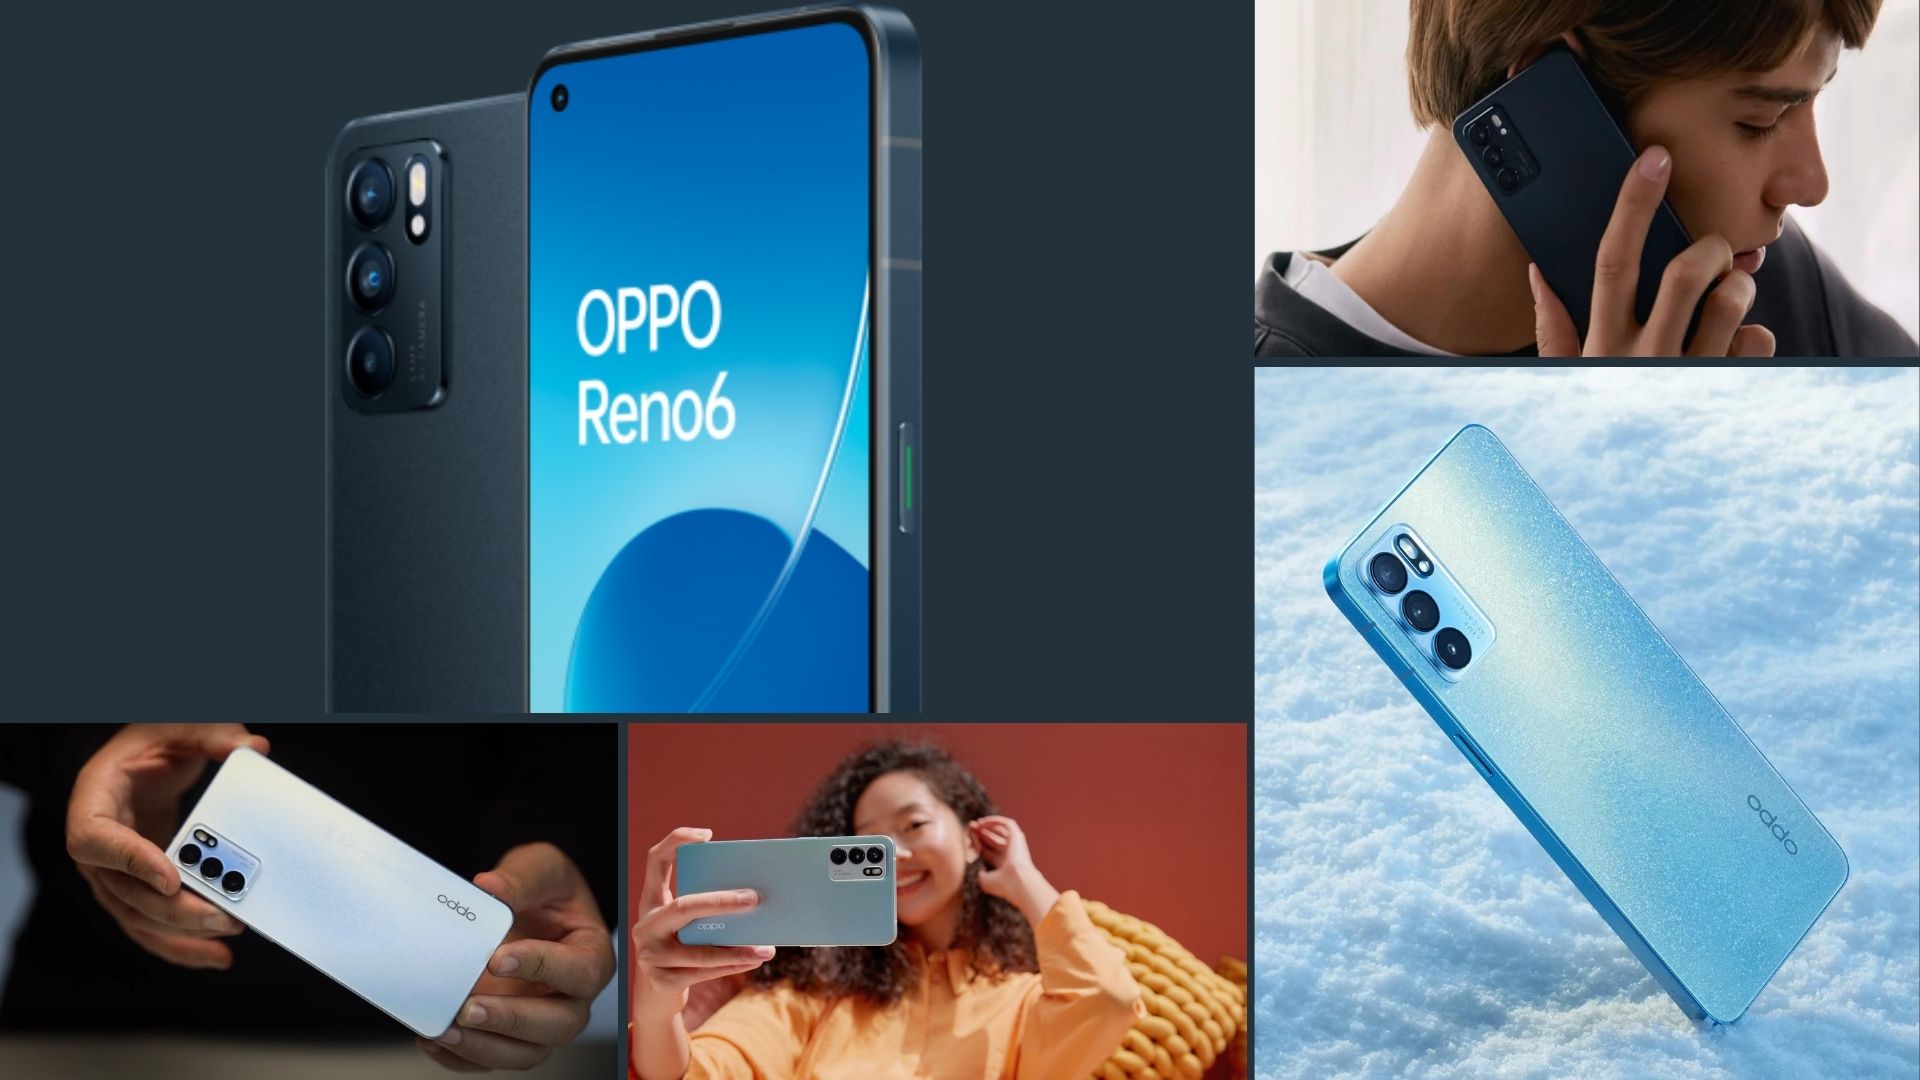 Ofertas, descuentos, Promociones y Cupones para comprar el Oppo Reno 6 5G con el Mejor Precio Online